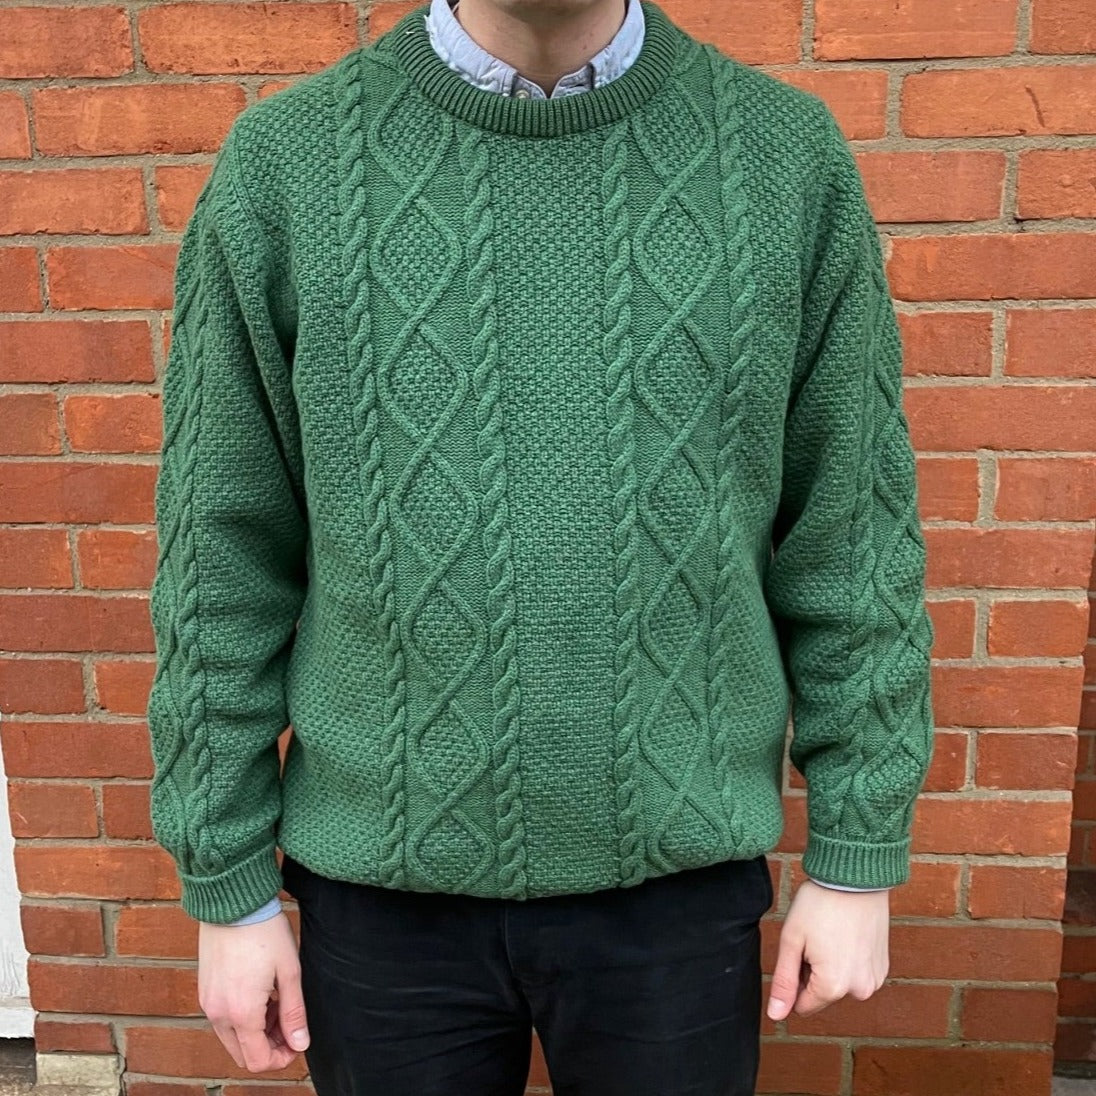 Green Aran Knit Sweater.